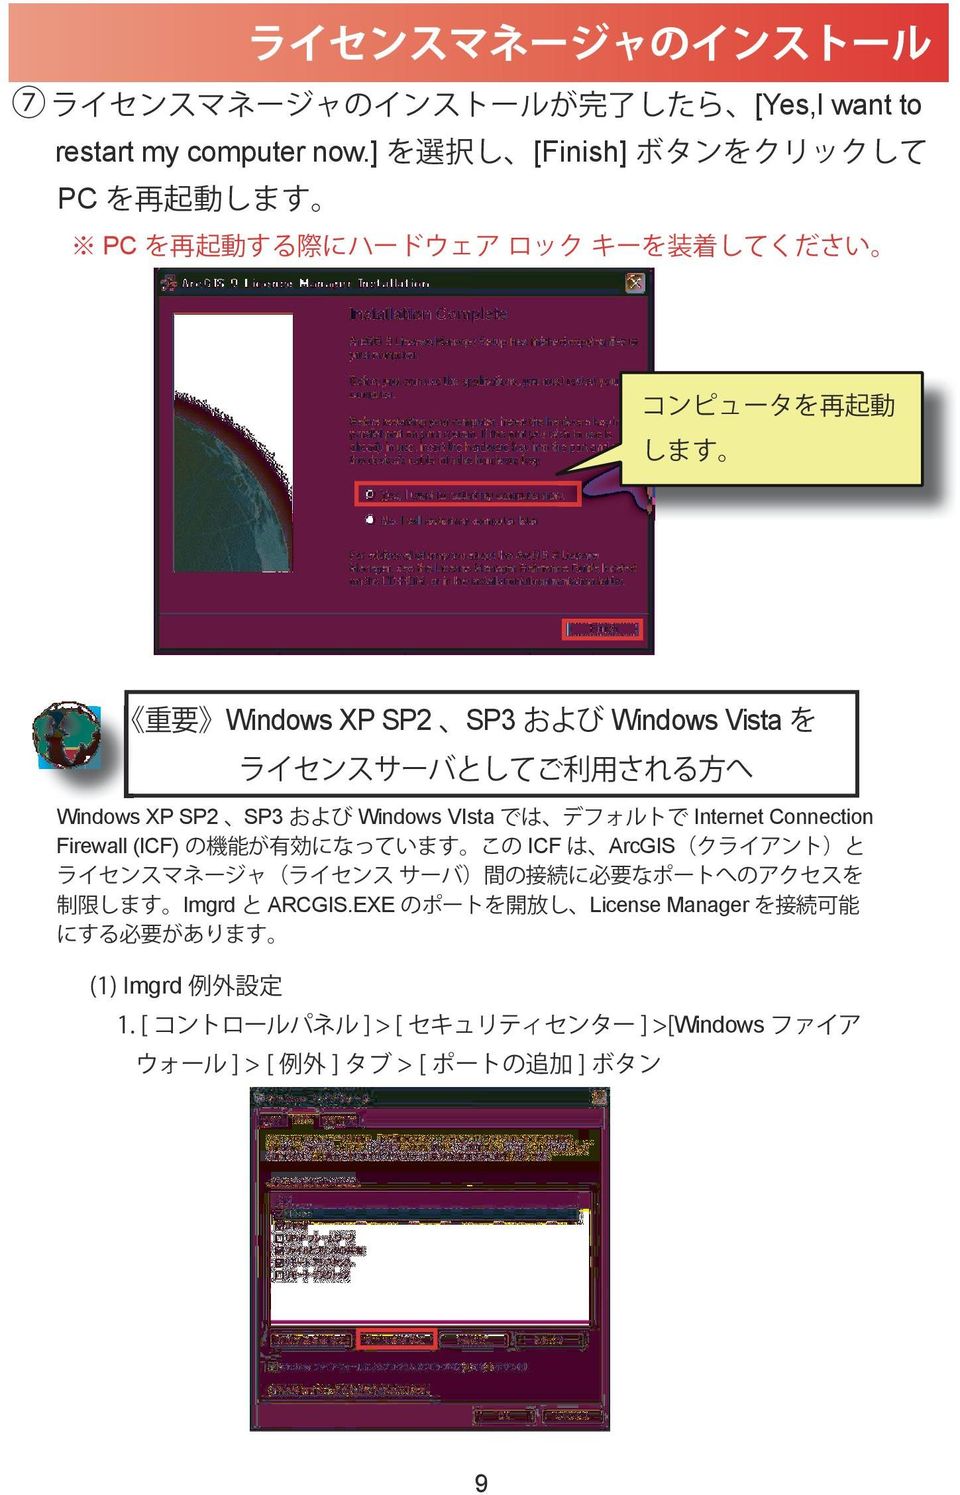 ライセンスサーバとしてご 利 用 される 方 へ Windows XP SP2 SP3 および Windows VIsta では デフォルトで Internet Connection Firewall (ICF) の 機 能 が 有 効 になっています この ICF は